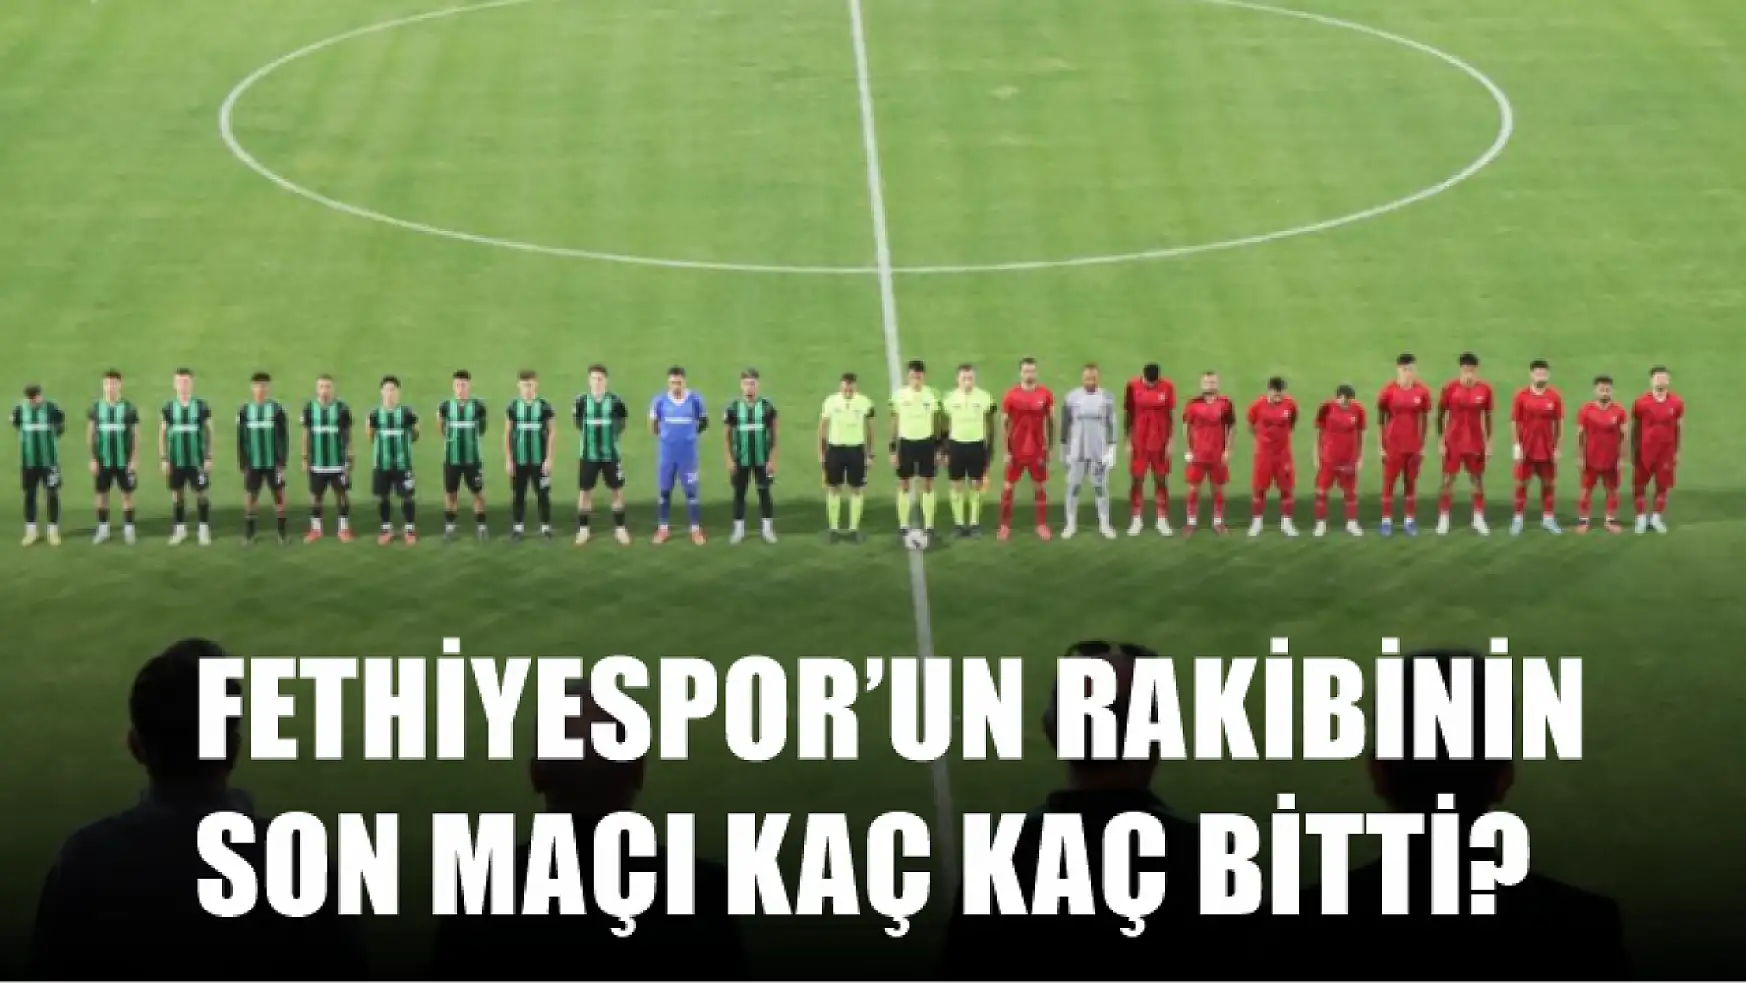 Fethiyespor'un rakibinin son maçı kaç kaç bitti?